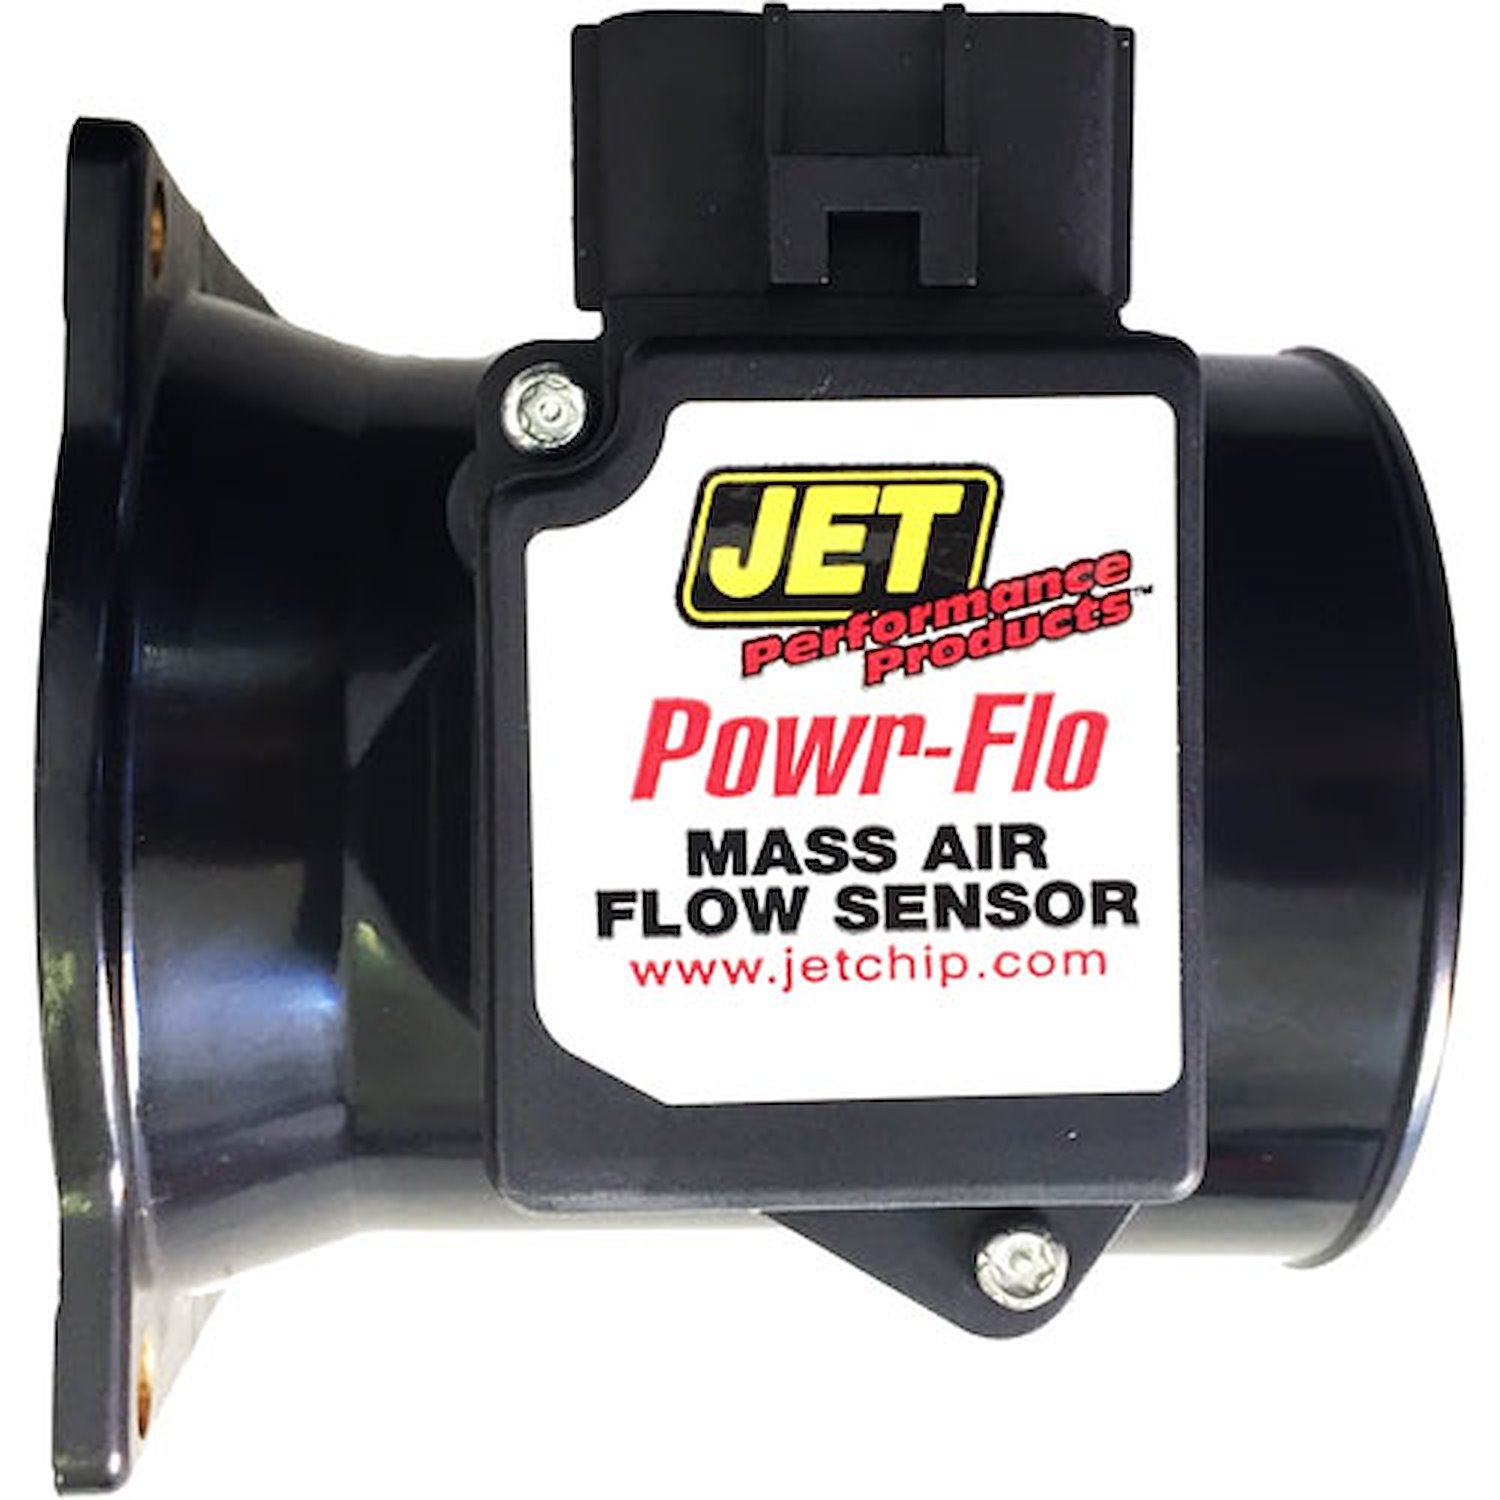 Powr-Flo Mass Air Sensor 1999-2003 E150/E250 4.2L